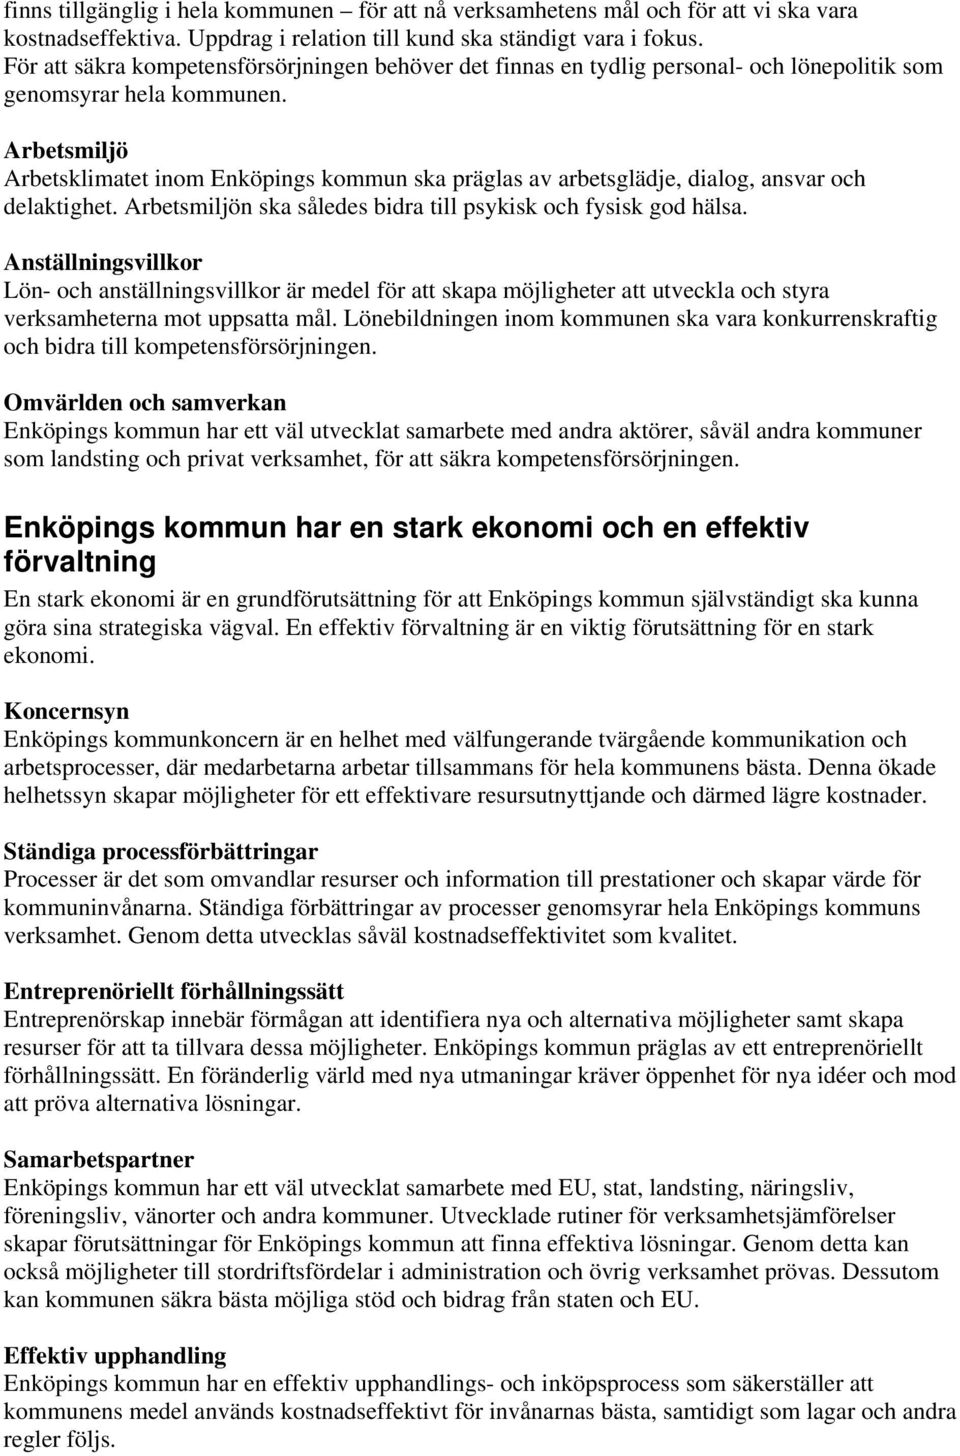 Arbetsmiljö Arbetsklimatet inom Enköpings kommun ska präglas av arbetsglädje, dialog, ansvar och delaktighet. Arbetsmiljön ska således bidra till psykisk och fysisk god hälsa.